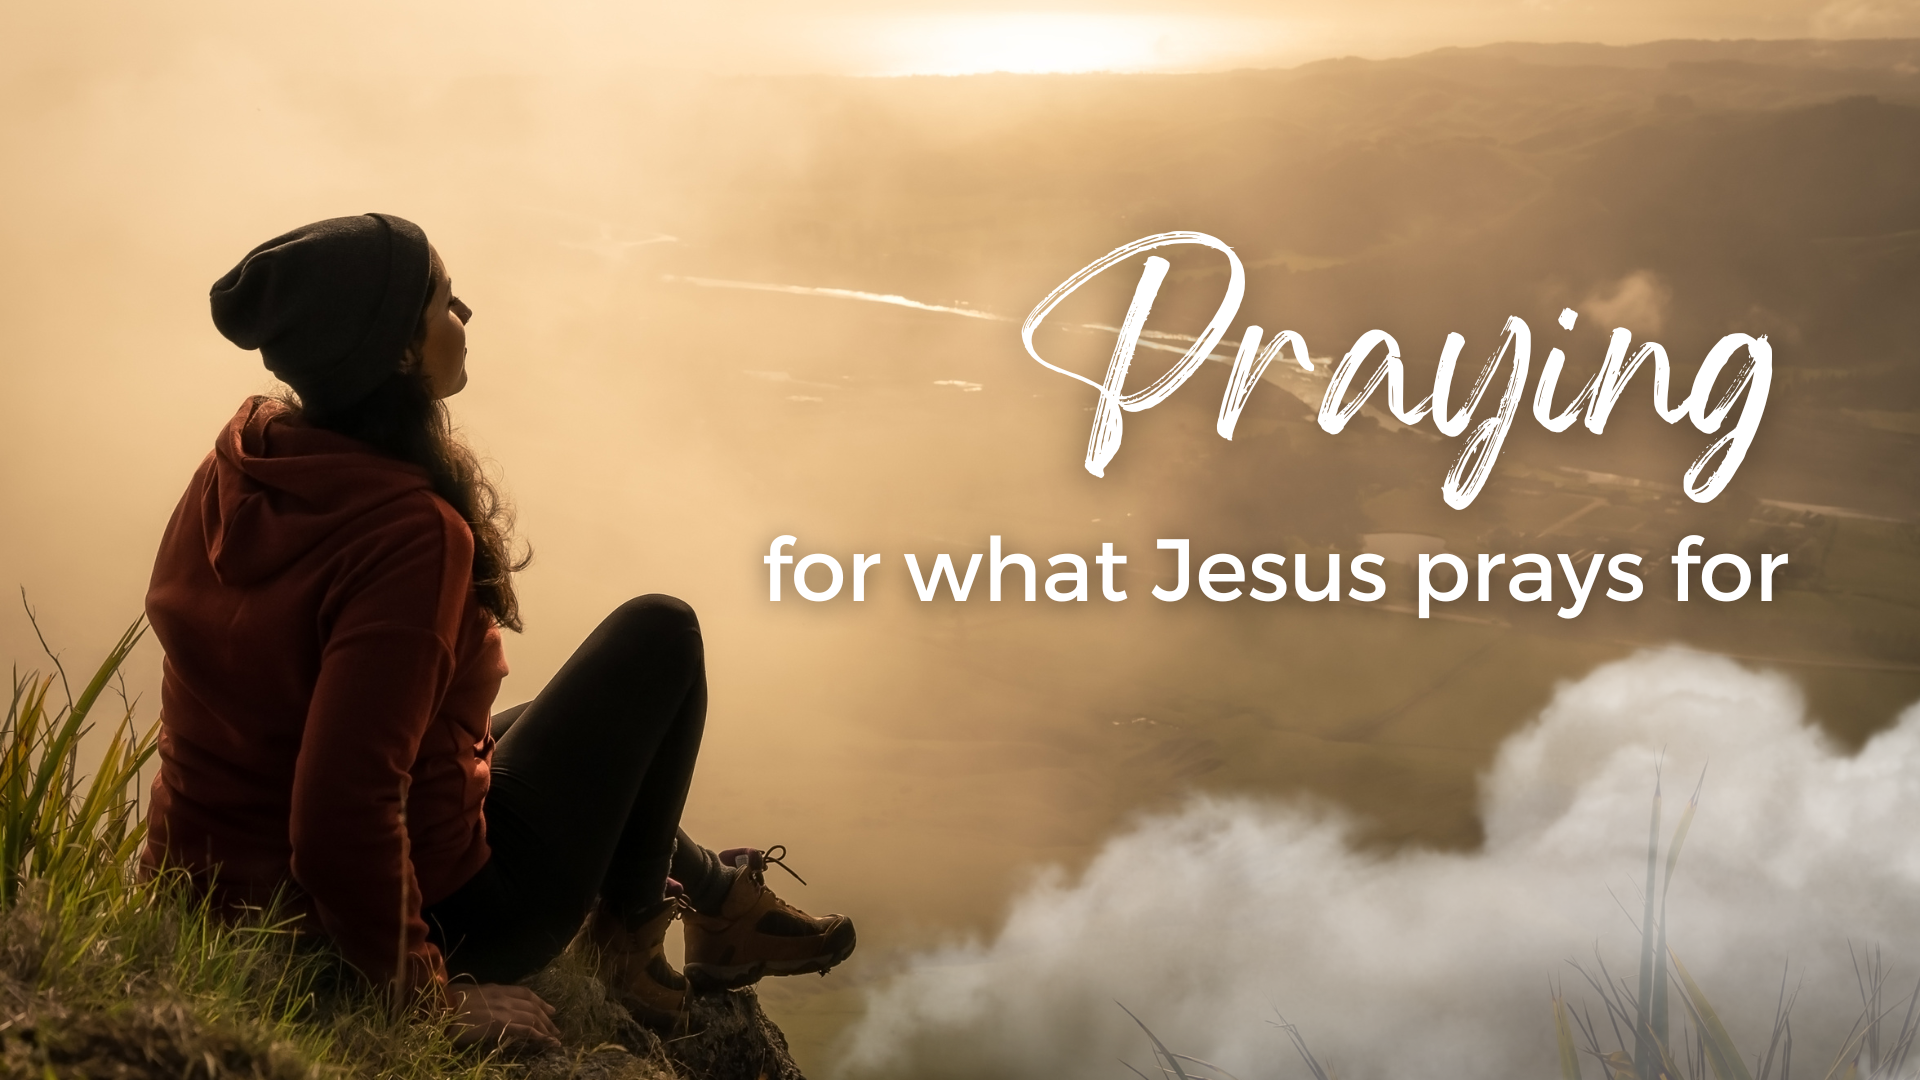 Praying for what Jesus prays for